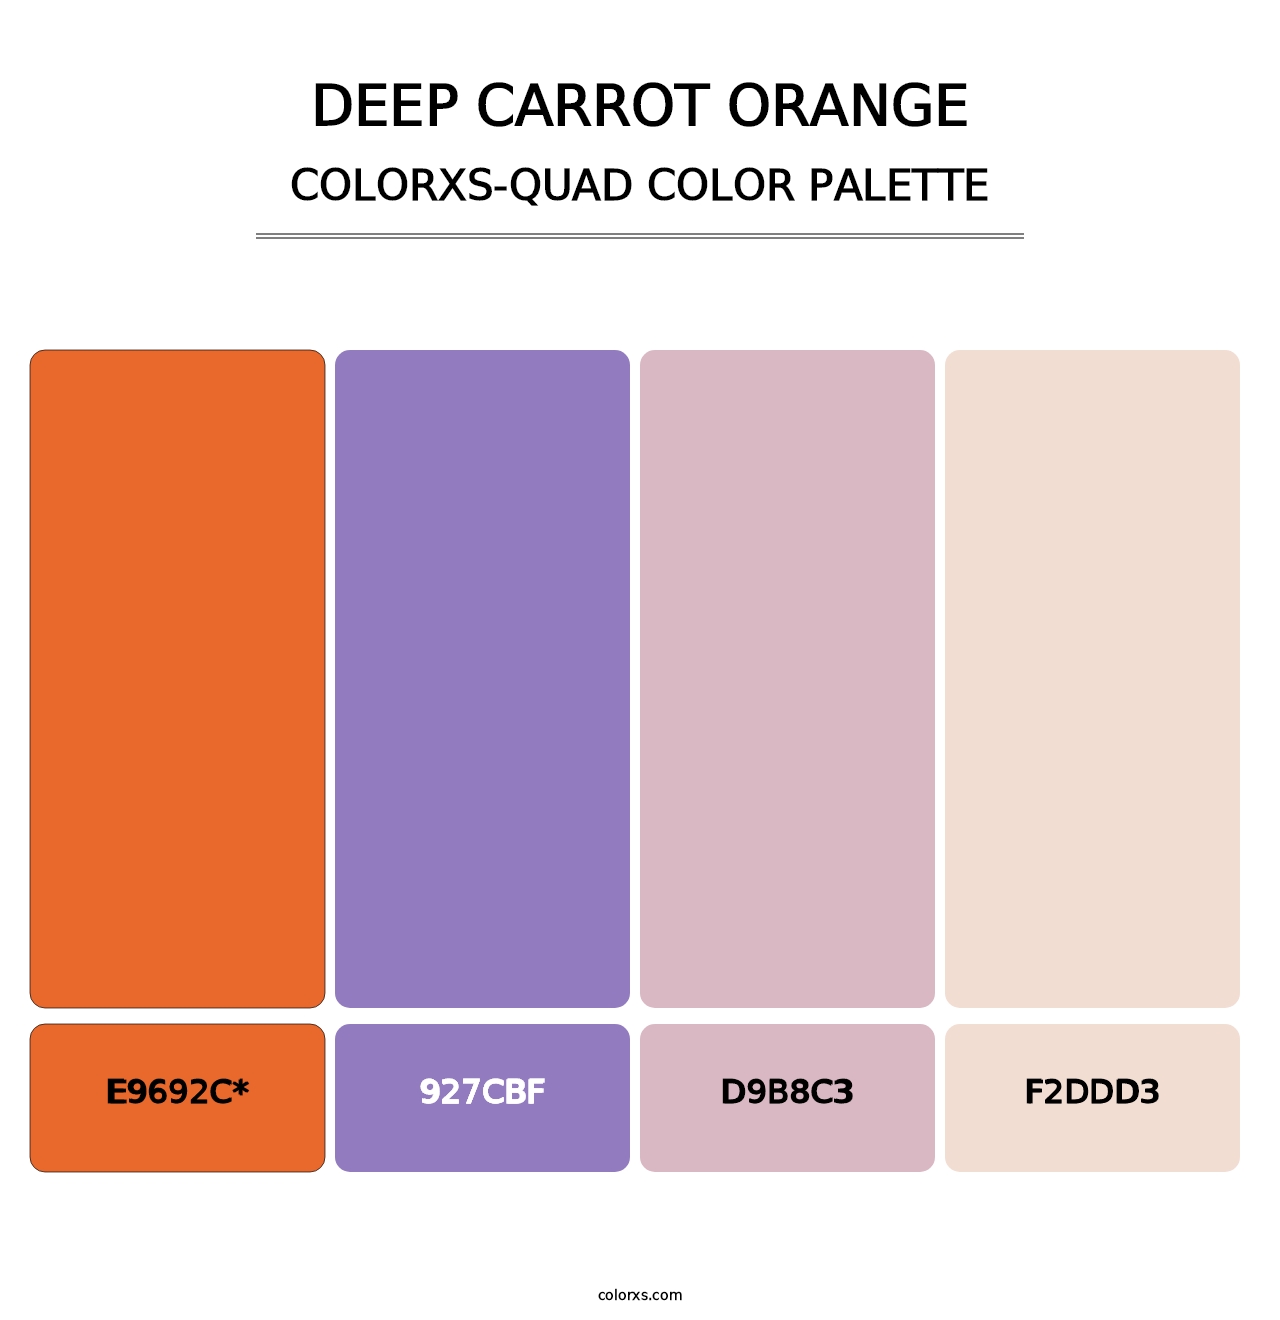 Deep Carrot Orange - Colorxs Quad Palette